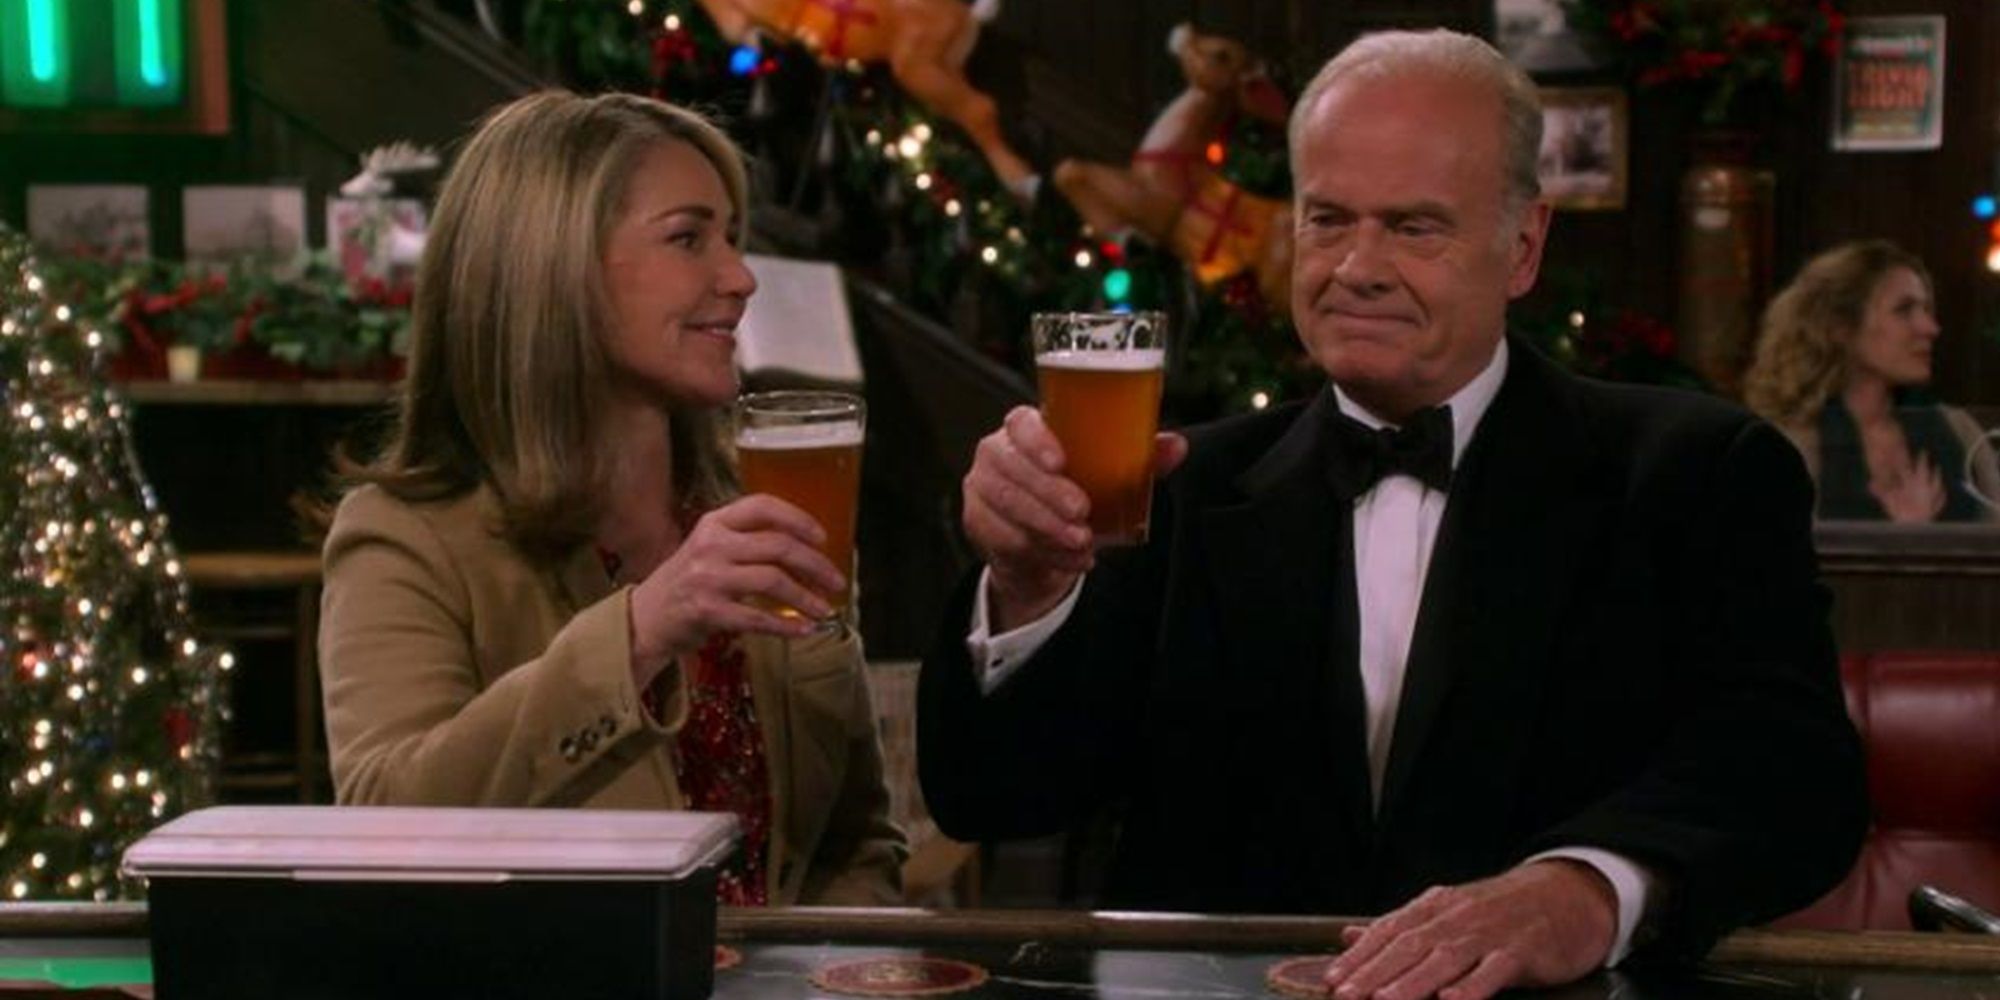 Frasier and Roz have a beer in Frasier